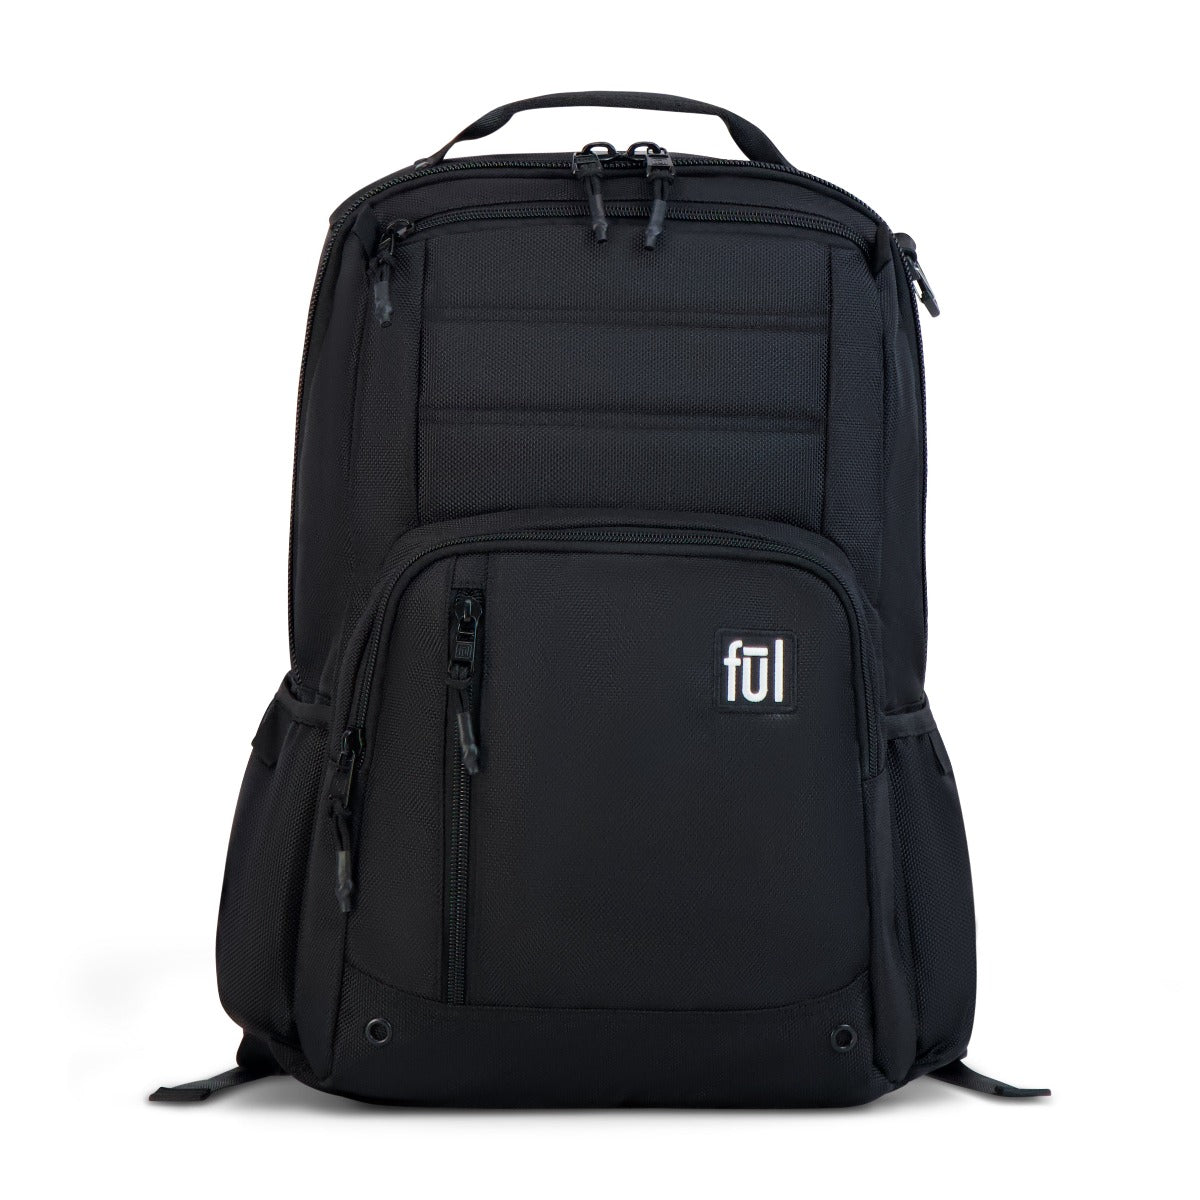 ful tactics collection phantom backpack black - technology safe backpacks